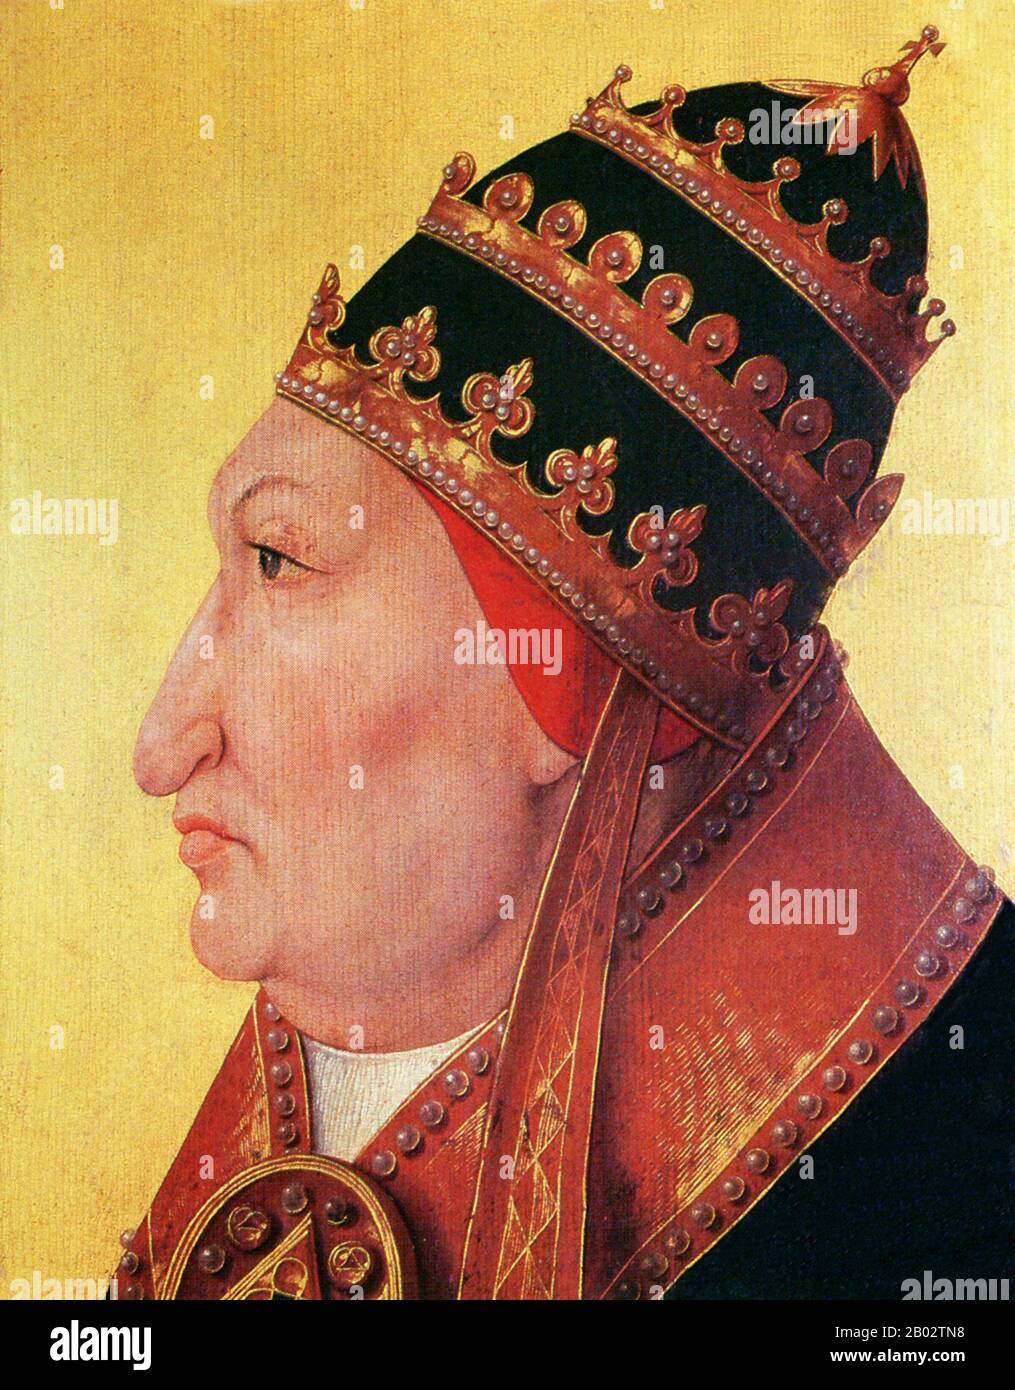 Papst Alexander VI., geborene Roderic Llançol i. de Borja (1. Januar 1431 - 18. August 1503), war vom 11. August 1492 bis zu seinem Tod Papst. Er ist der umstrittenste der Renaissance-Päpste, weil er das priesterliche Gelübde des Zölibats brach und mehrere legitim anerkannte Kinder hatte. Daher wurde sein italianisierter valencianischer Familienname Borgia zum Schlagwort für Libertinismus und Vetternwirtschaft, die traditionell als Charakterisierung seines Pontifikats gelten. Zwei der Nachfolger Alexanders, Sixtus V. und Urban VIII., bezeichneten ihn jedoch als einen der herausragendsten Päpste seit St. Peter. Stockfoto